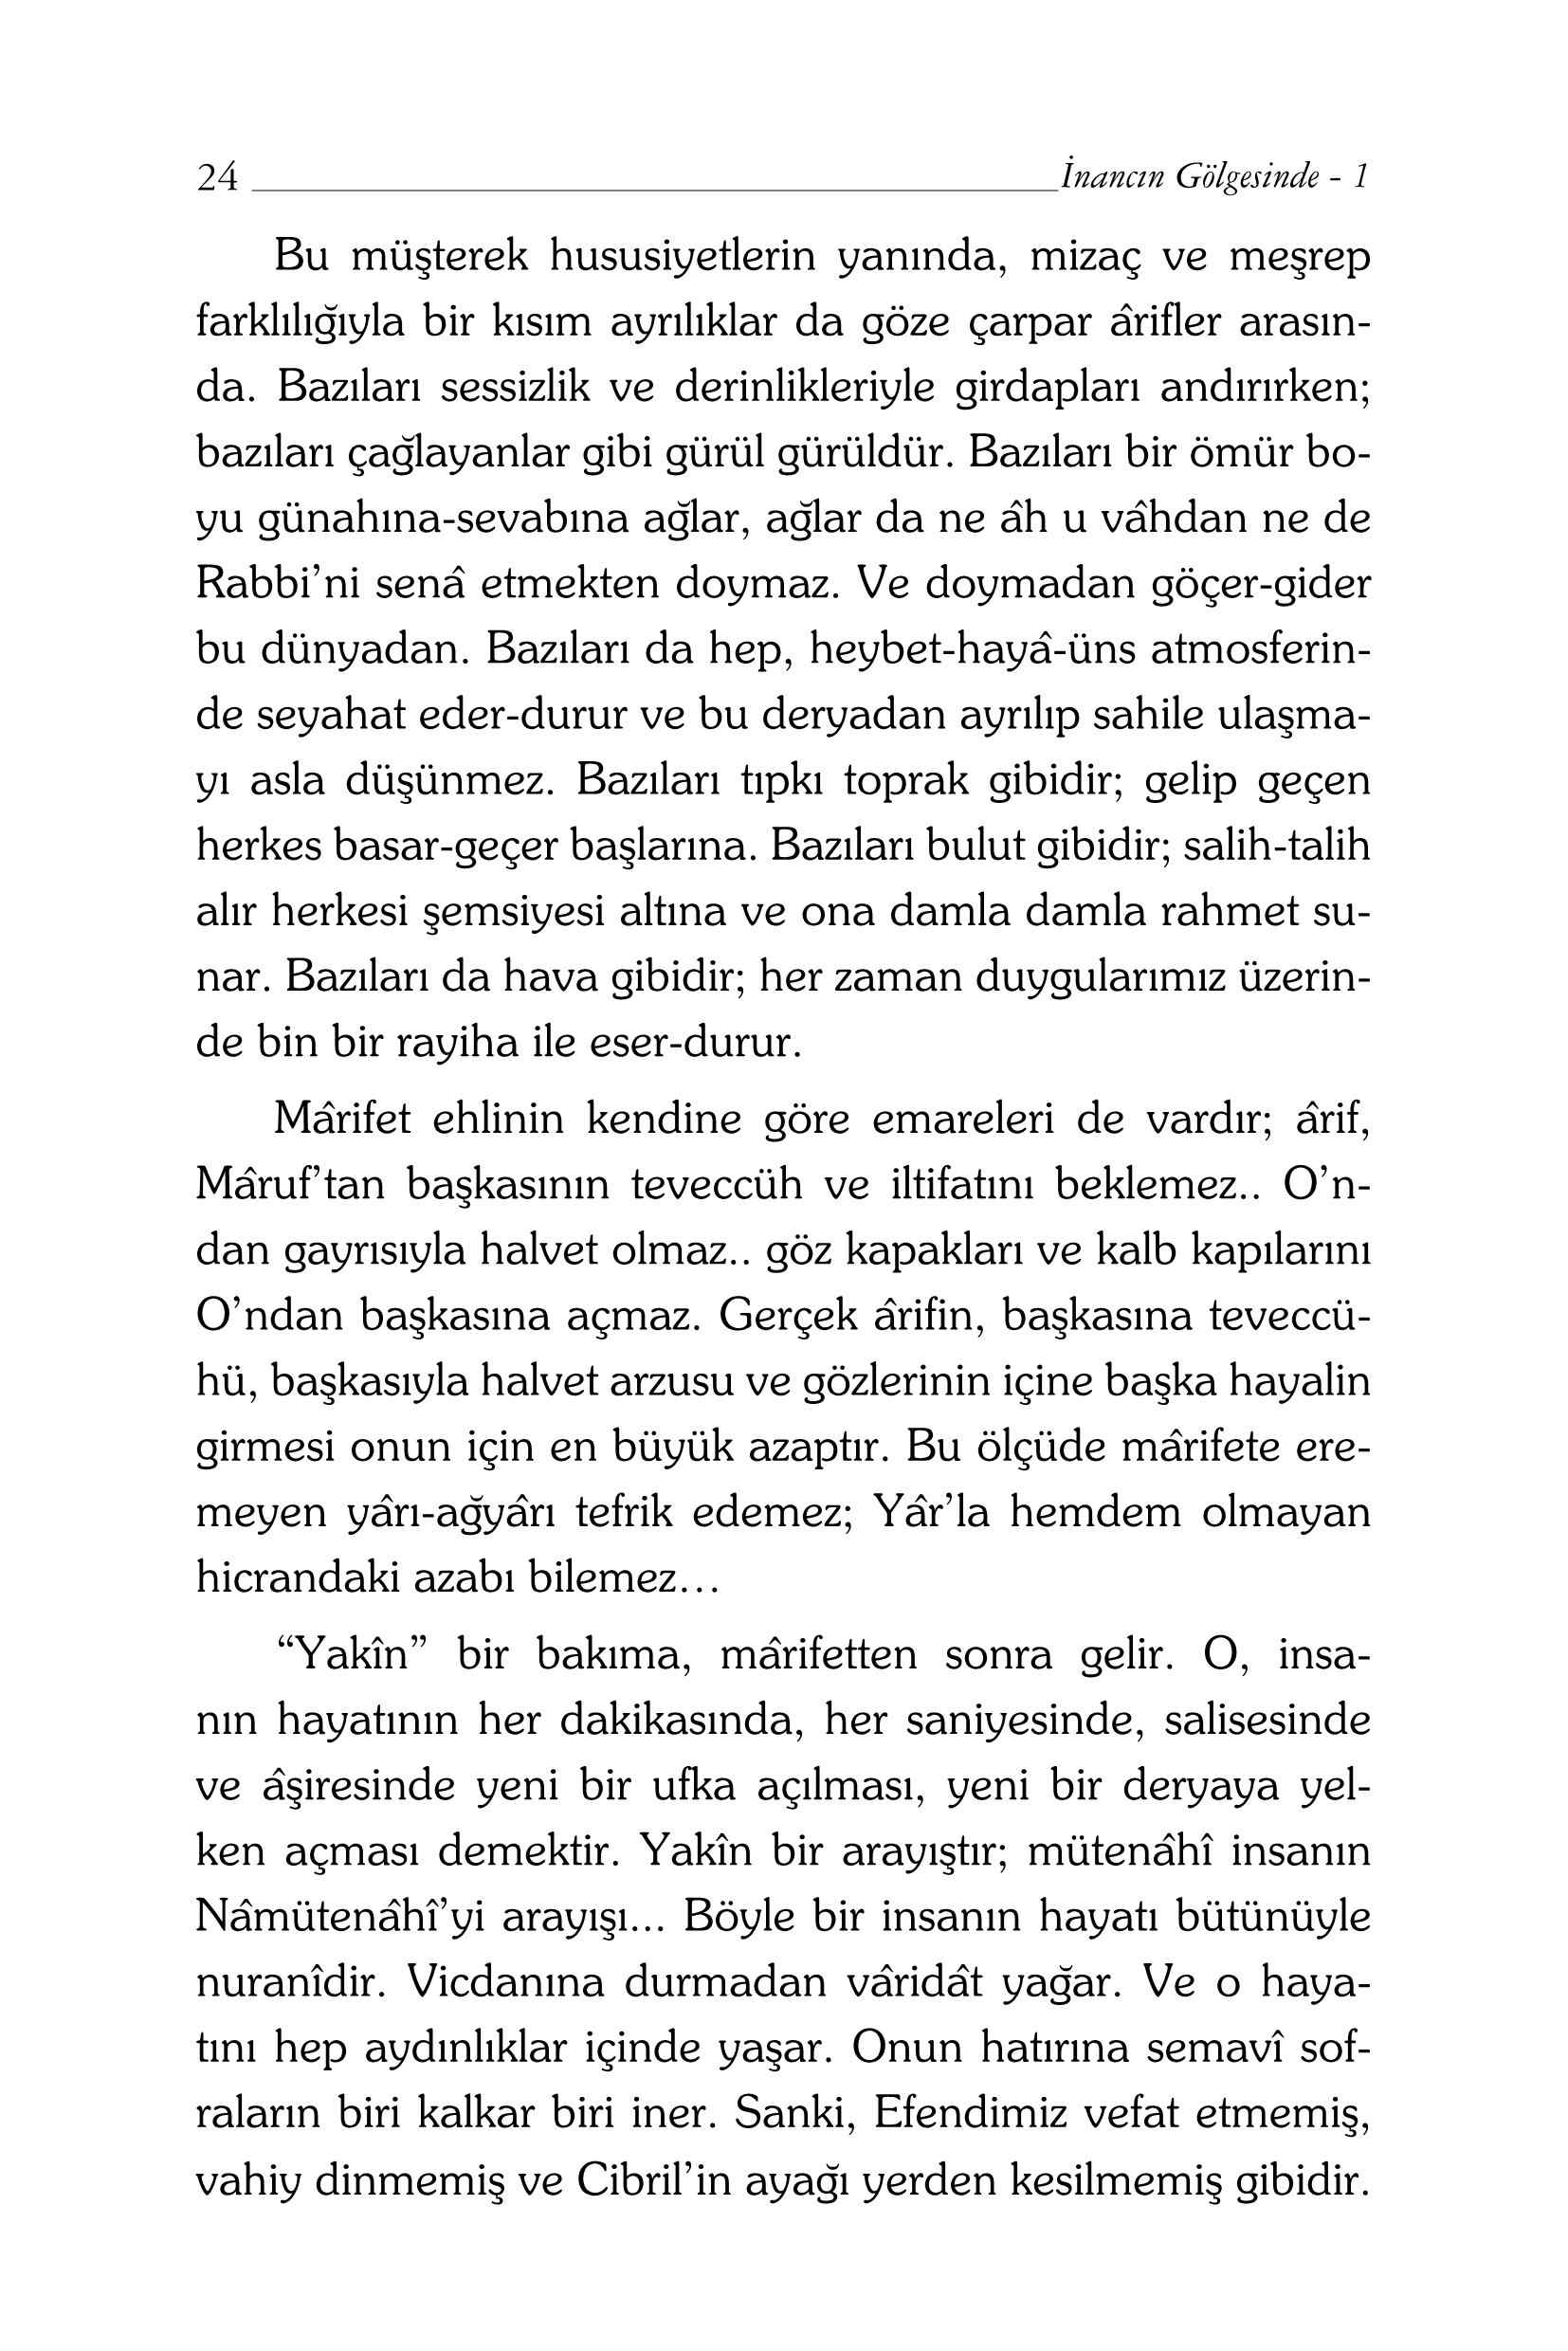 Inancin golgesinde-1 - M F Gulen.pdf, 328-Sayfa 